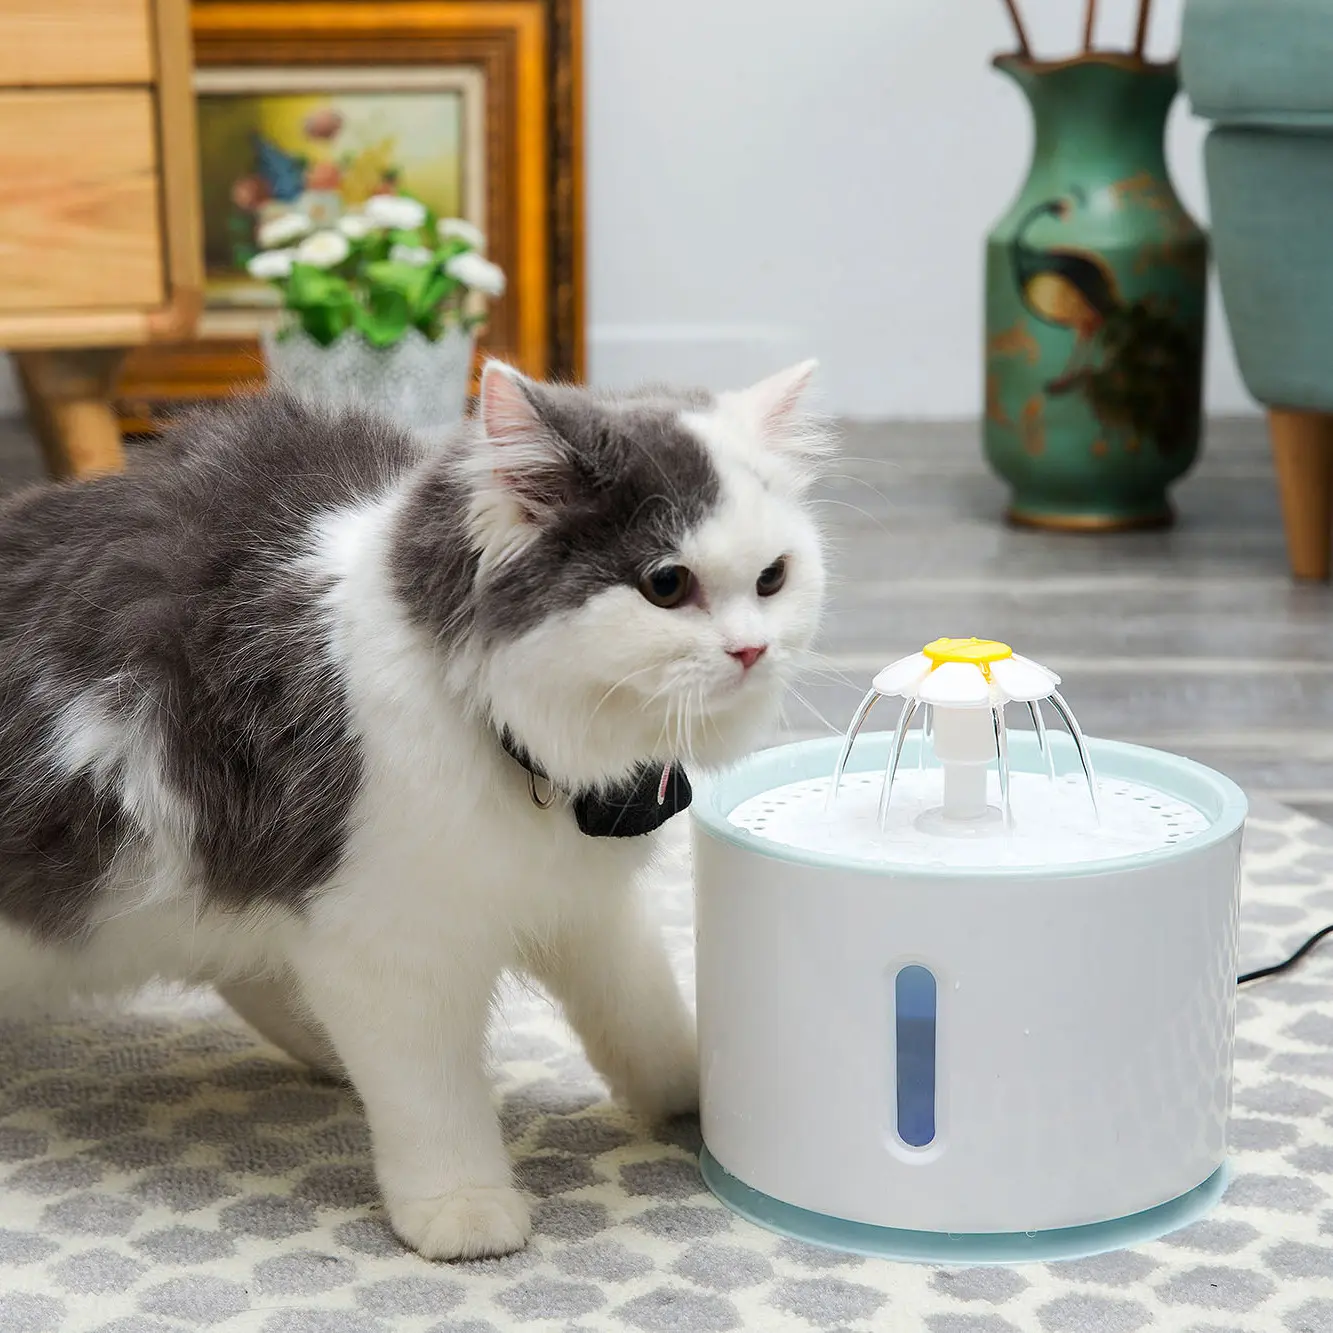 C & C 2023 חכם יוקרה אוטומטי חשמלי לחיות מחמד חתול כלבים מים מזרקת שתיית Dispenser מסנני בחוץ לשתות מזרקת עבור חתולים